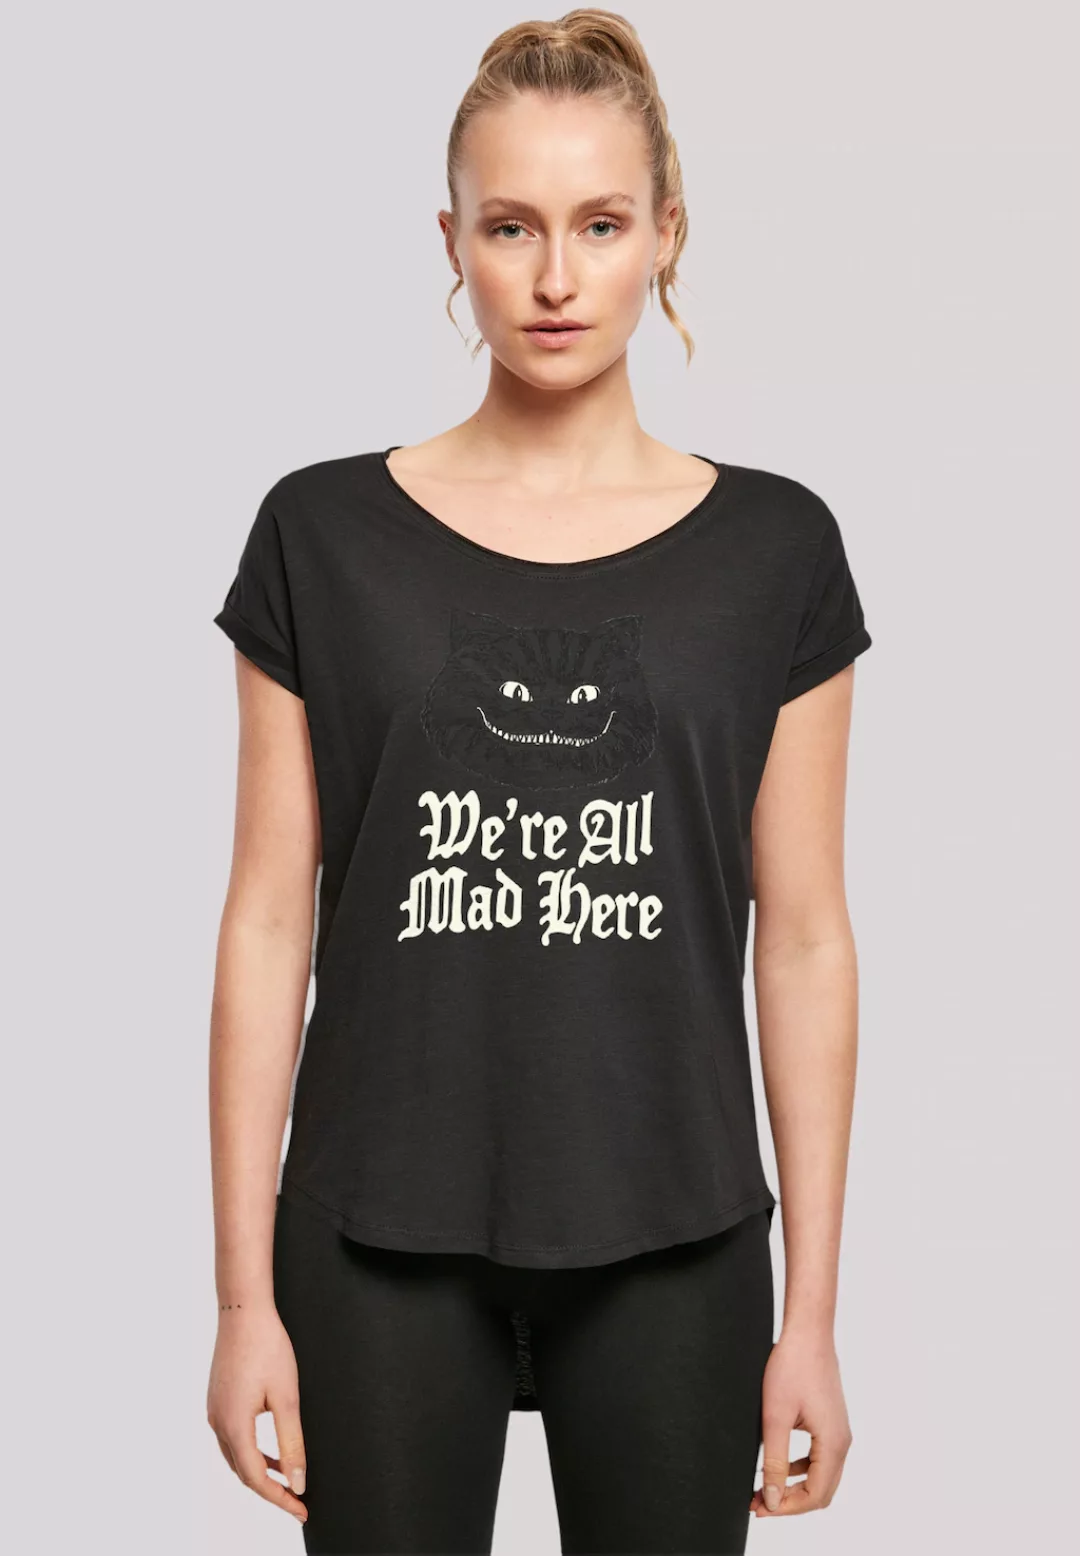 F4NT4STIC T-Shirt "Disney Alice im Wunderland Mad Glow", Premium Qualität günstig online kaufen